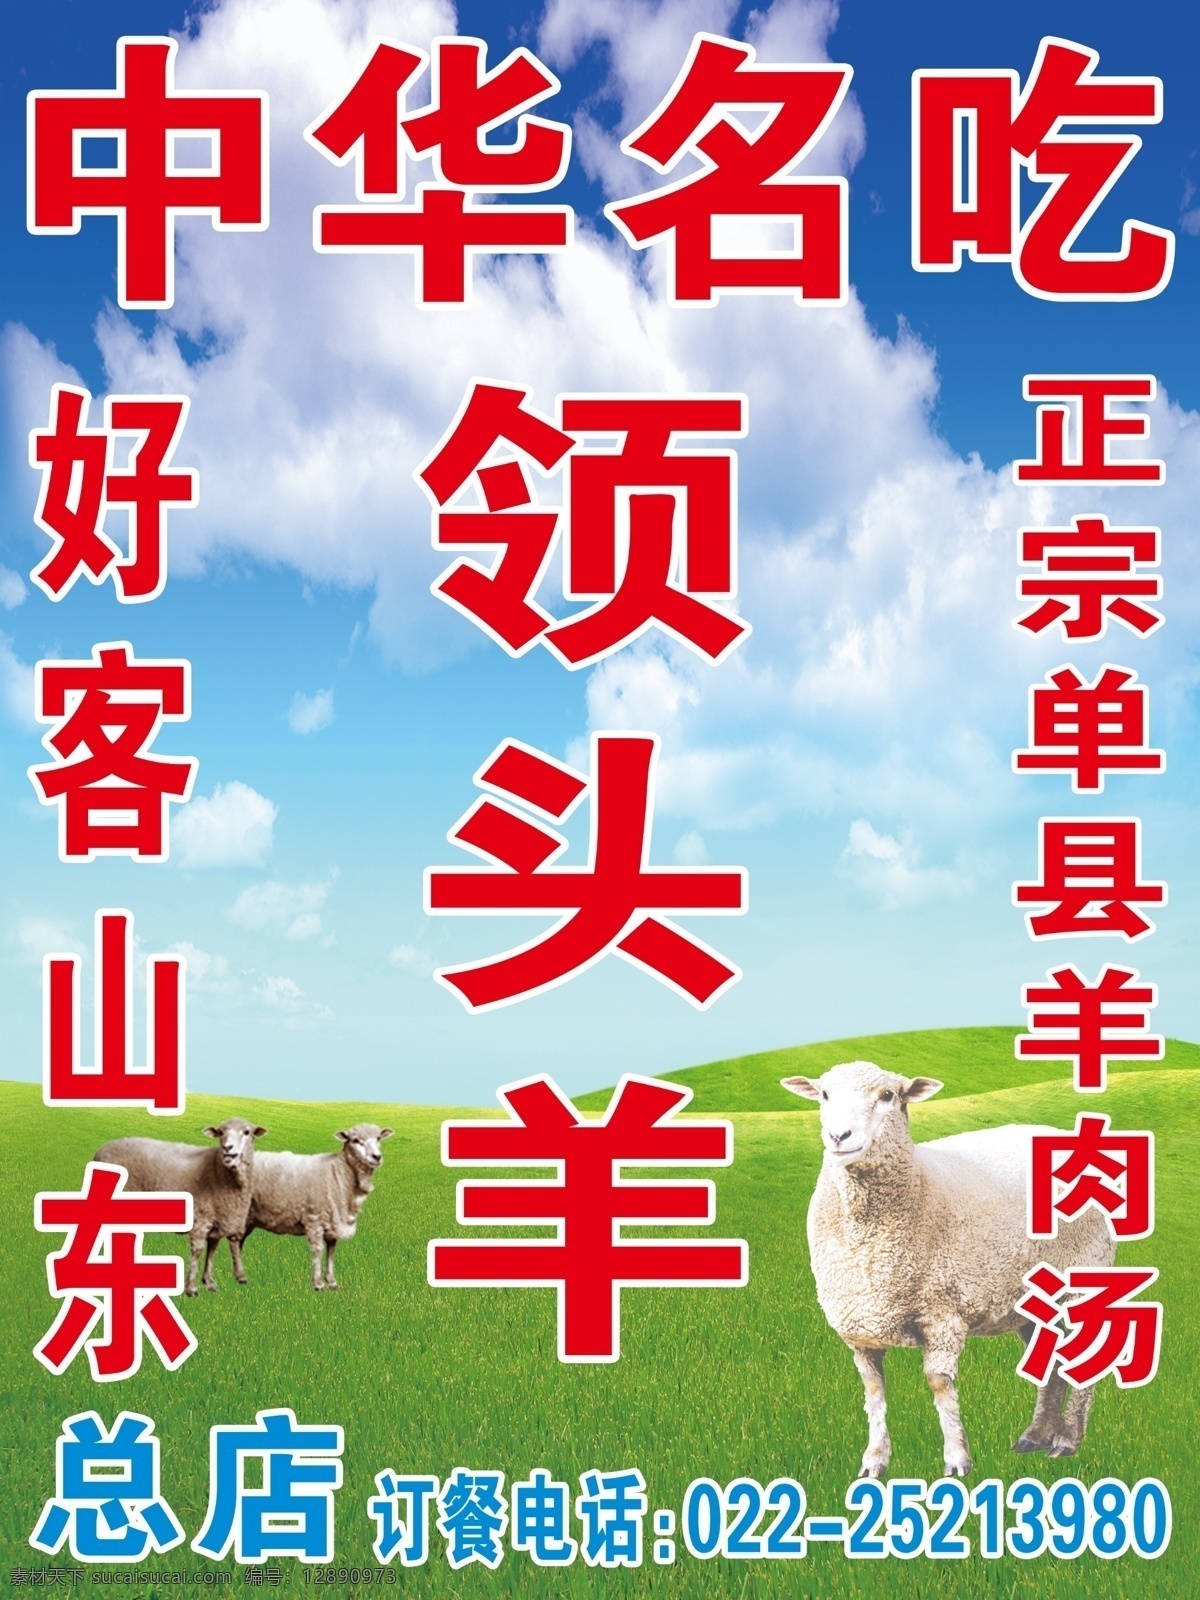 中华 名吃 分层图片 蓝天绿草地 小绵羊 羊肉汤 好客山东 领头羊 psd源文件